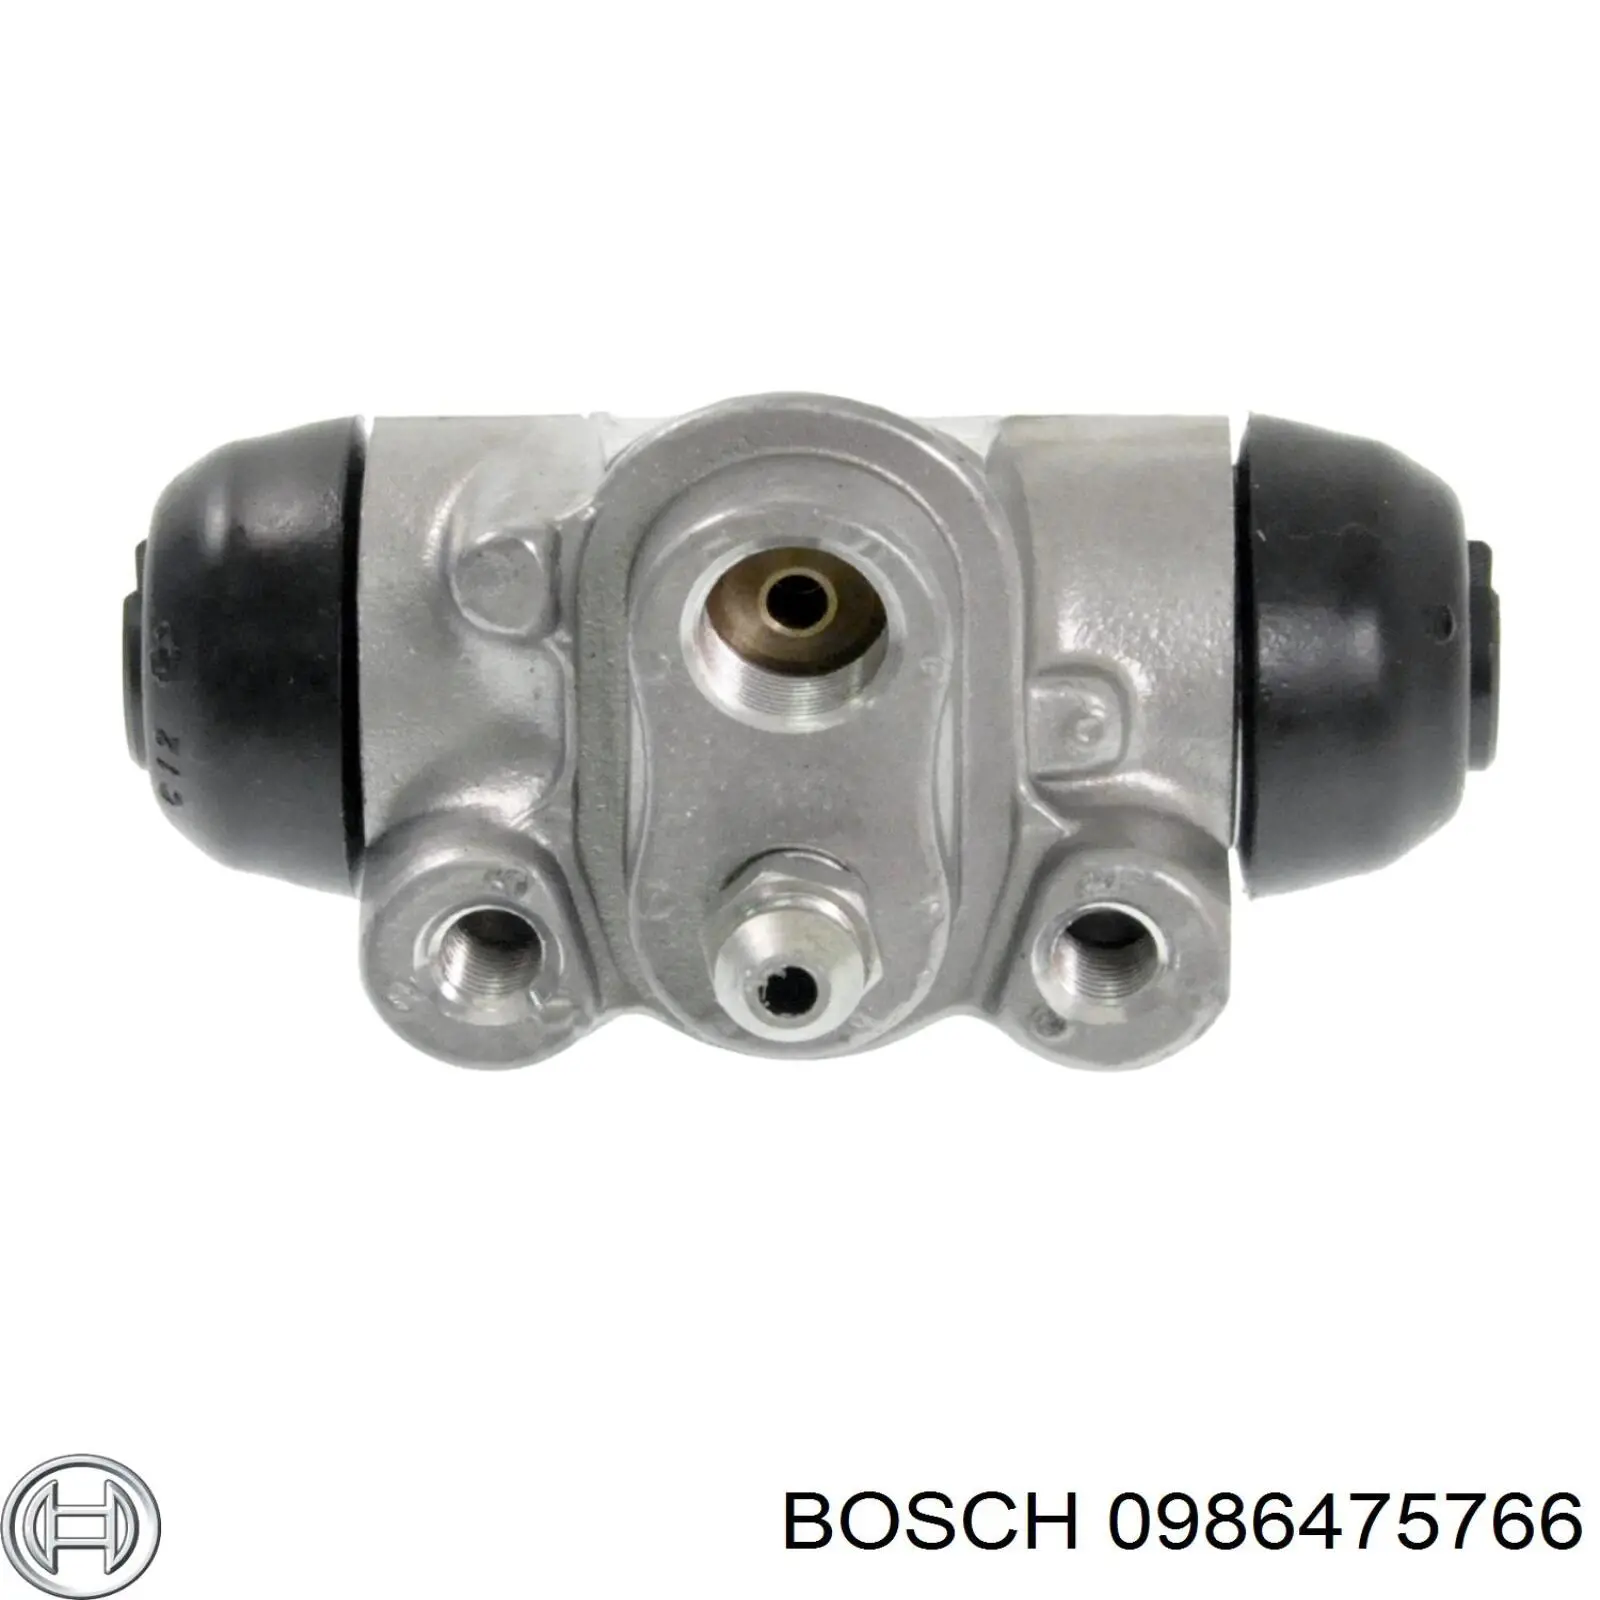 0986475766 Bosch cilindro de freno de rueda trasero